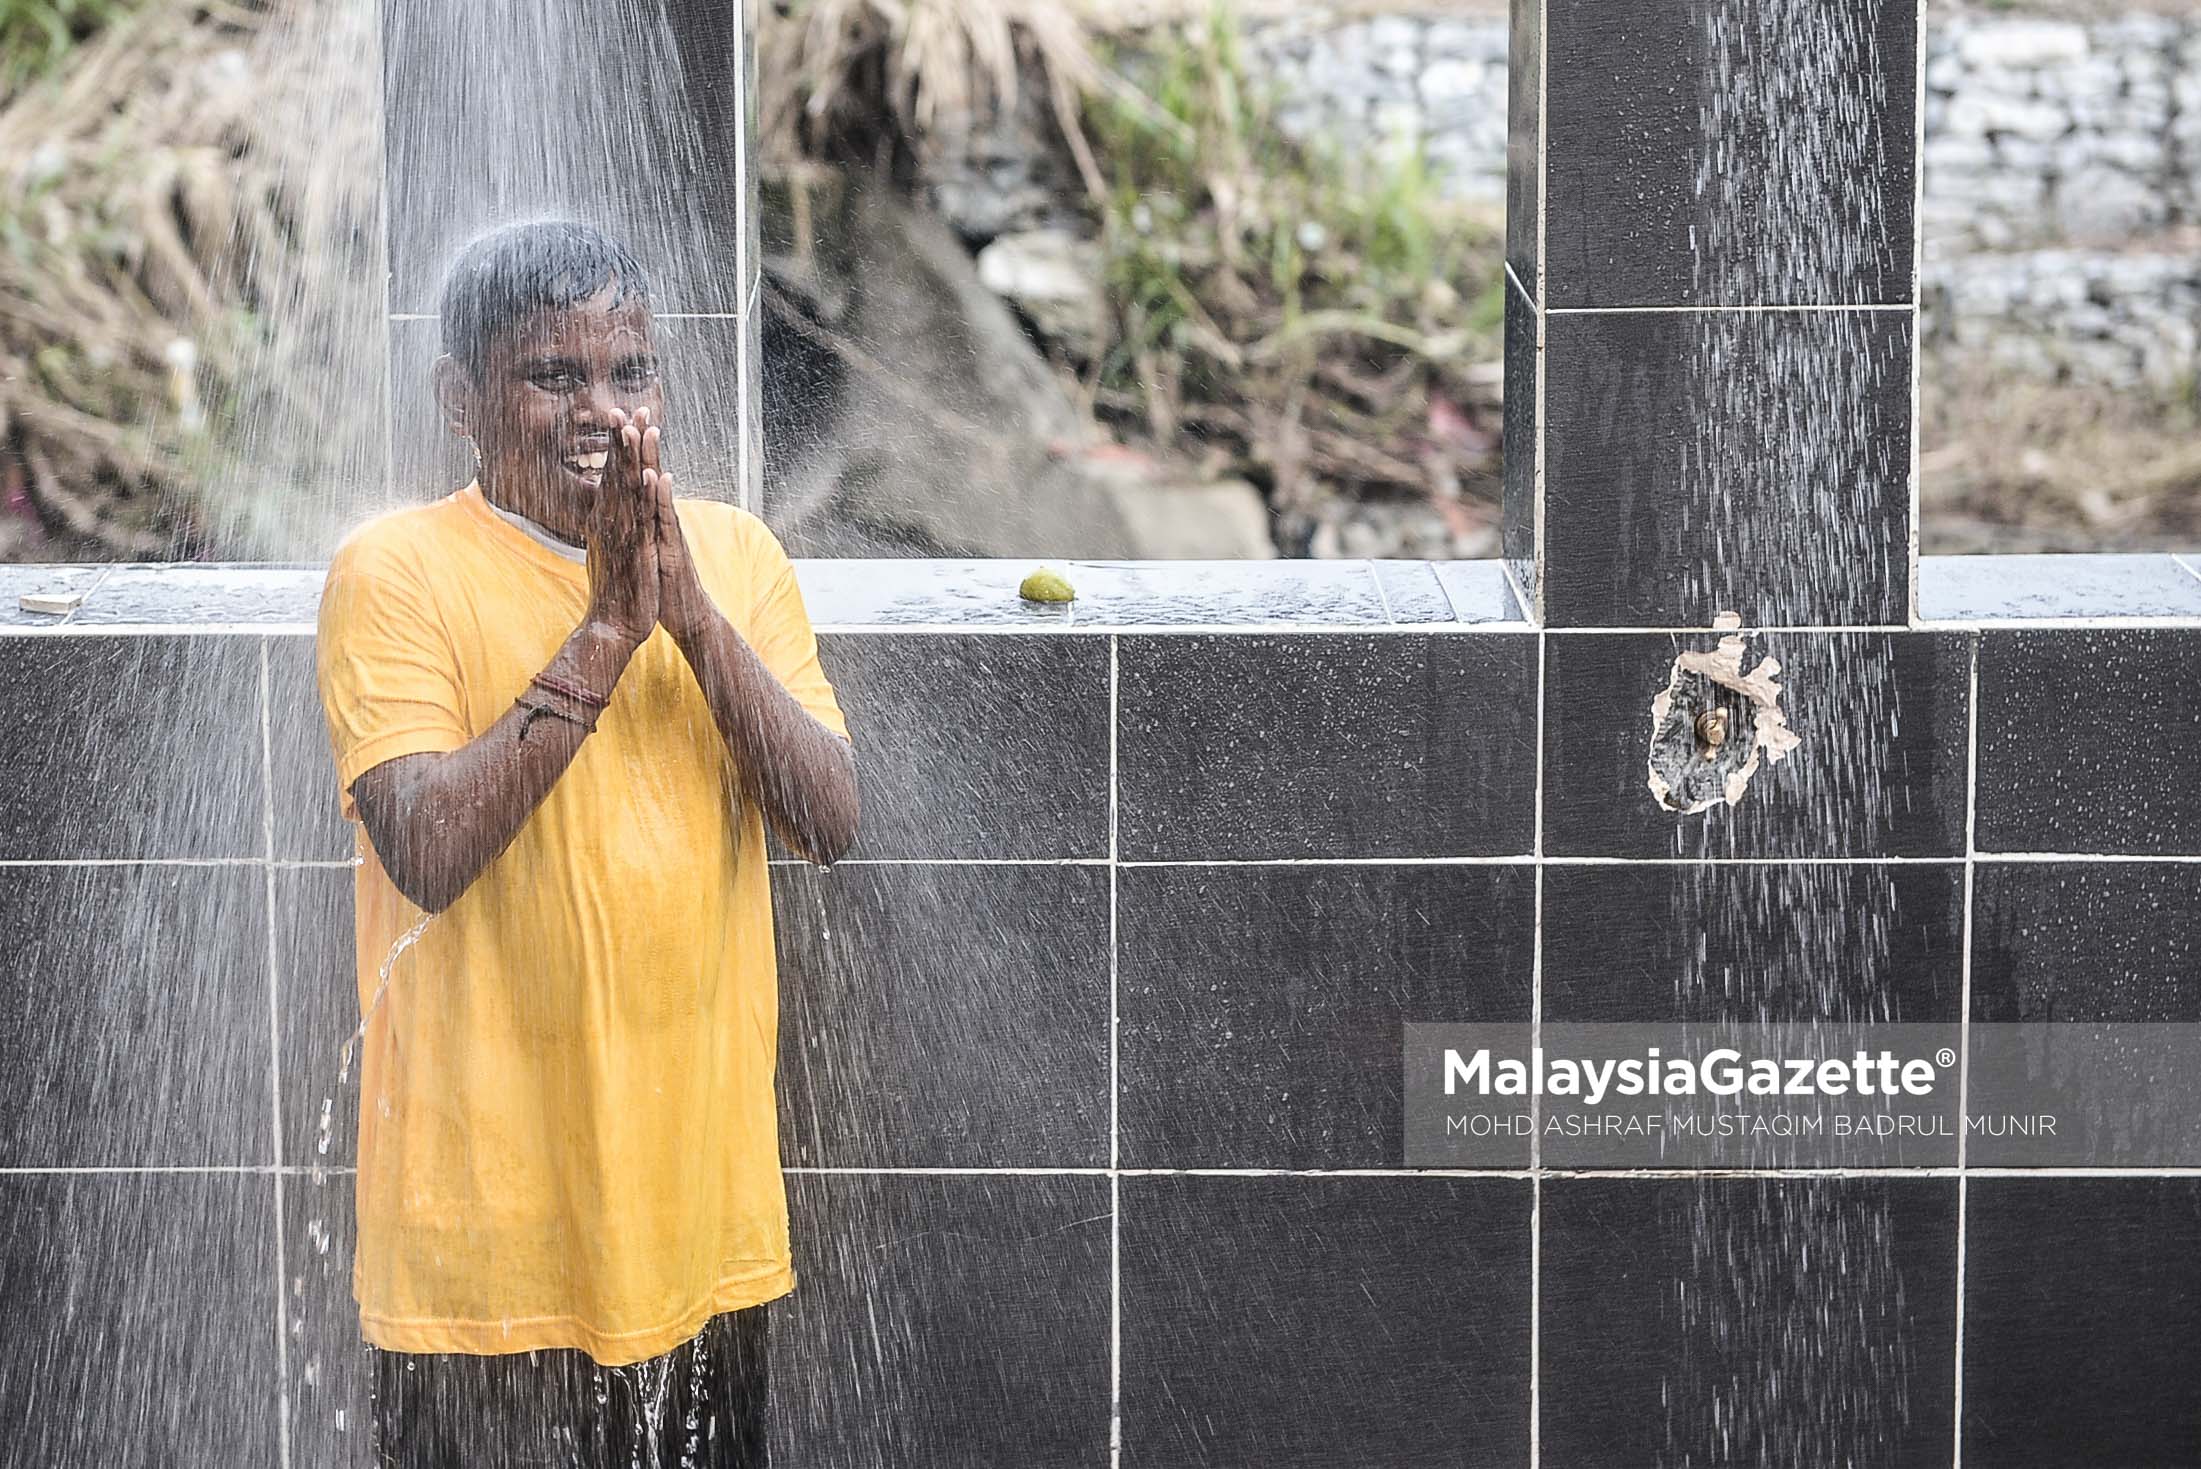 Gelagat seorang kanak-kanak menunaikan nazar ketika tinjauan lensa Malaysia Gazette sempena sambutan Thaipusam 2017 di Batu Caves, Selangor. foto ASHRAF MUSTAQIM BADRUL MUNIR, 08 FEBRUARI 2017.